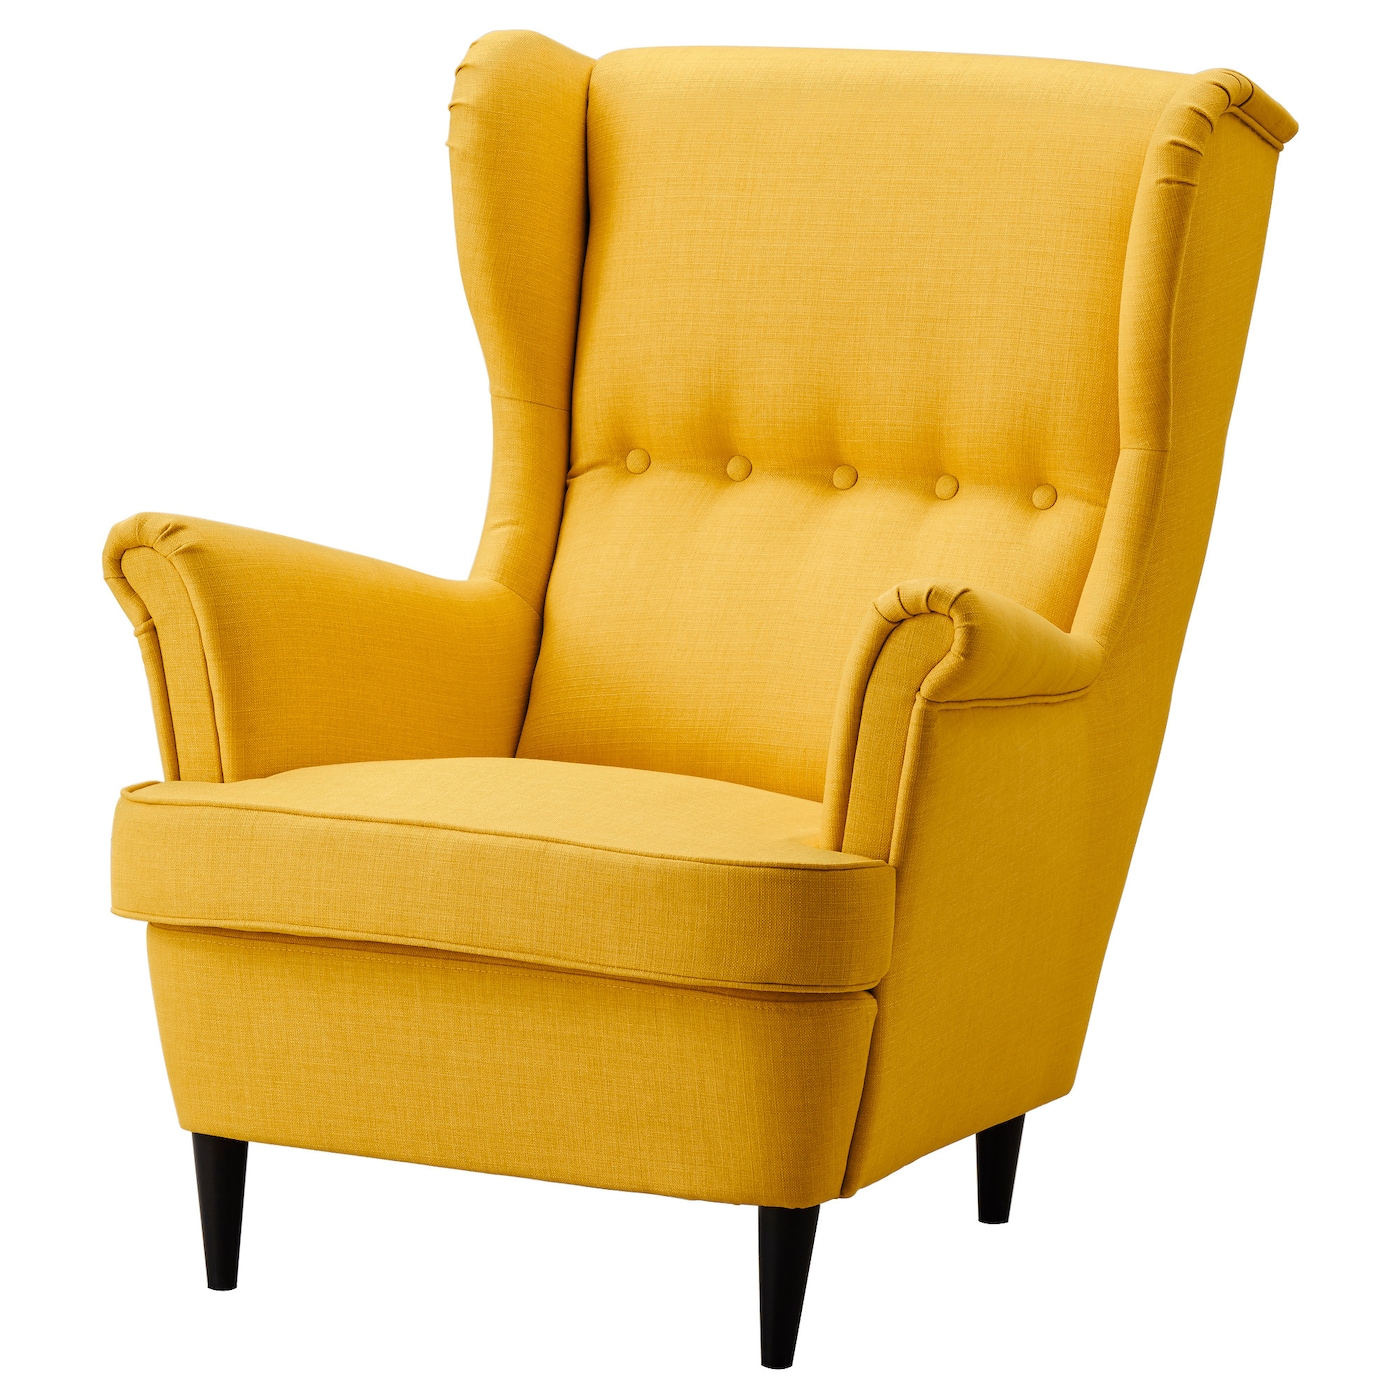 СТРАНДМОН Кресло, Скифтебо желтый STRANDMON IKEA